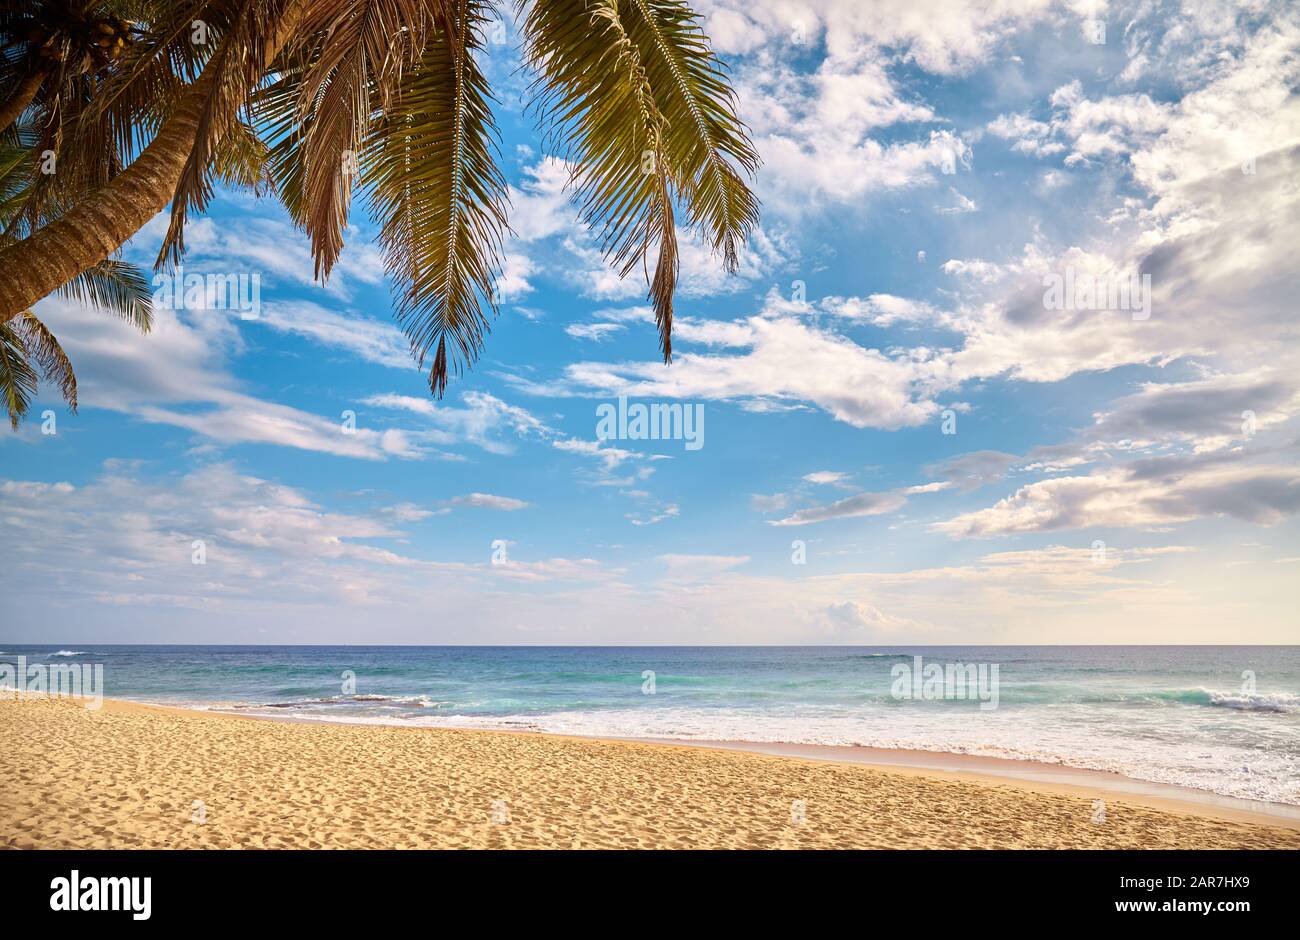 Plage tropicale avec palmier à noix de coco au coucher du soleil, concept de vacances d'été. Banque D'Images